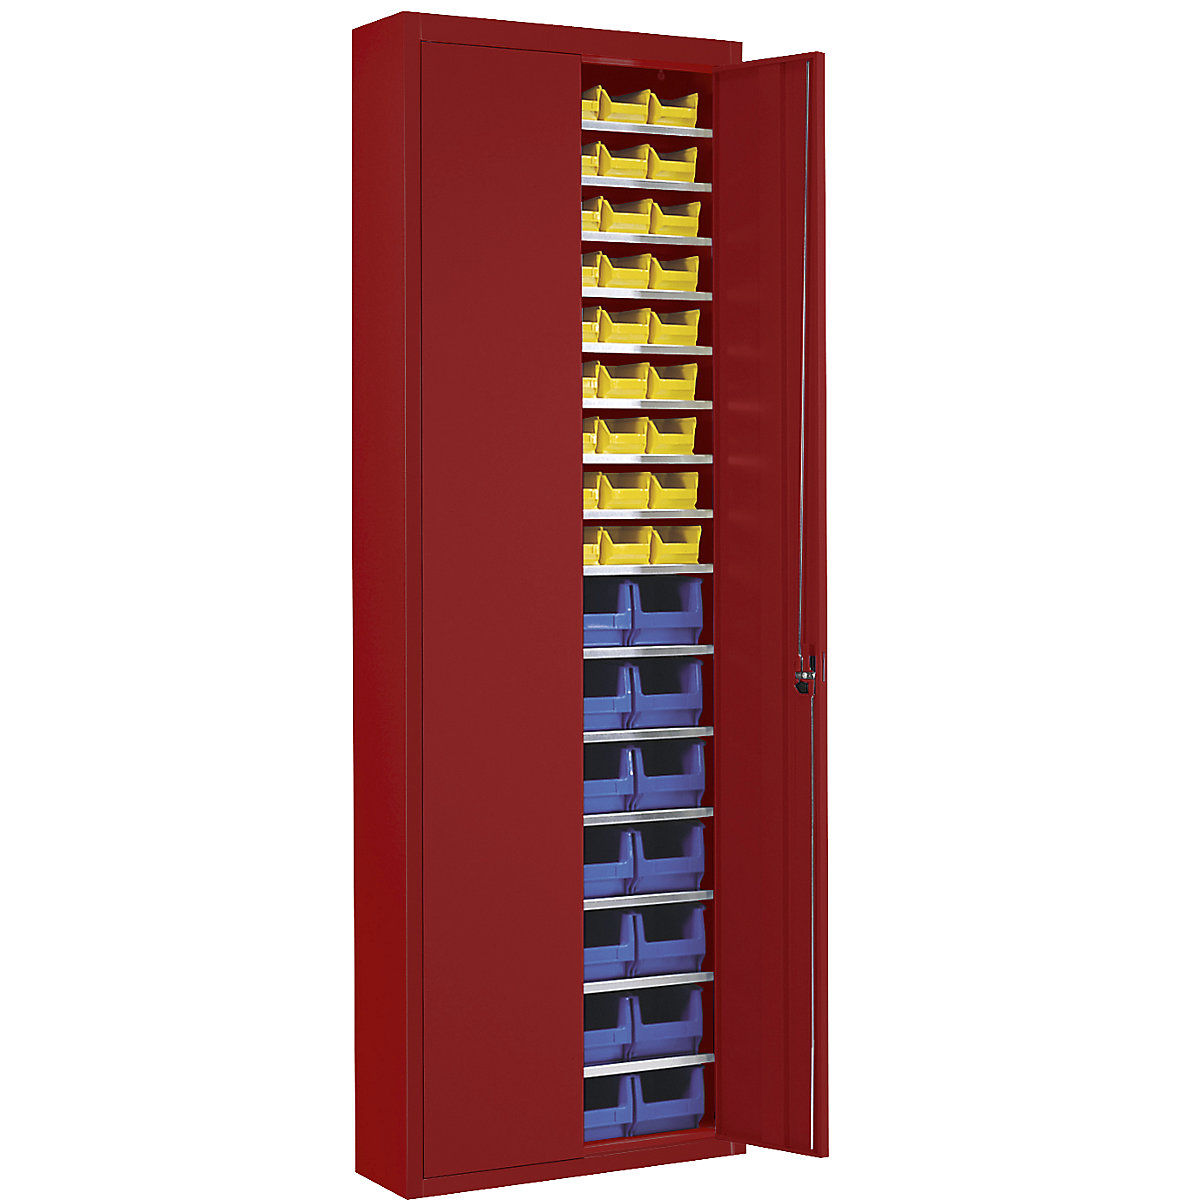 Raktári szekrény nyitott tárolódobozokkal – mauser, ma x szé x mé 2150 x 680 x 280 mm, egyszínű, piros, 82 doboz-5